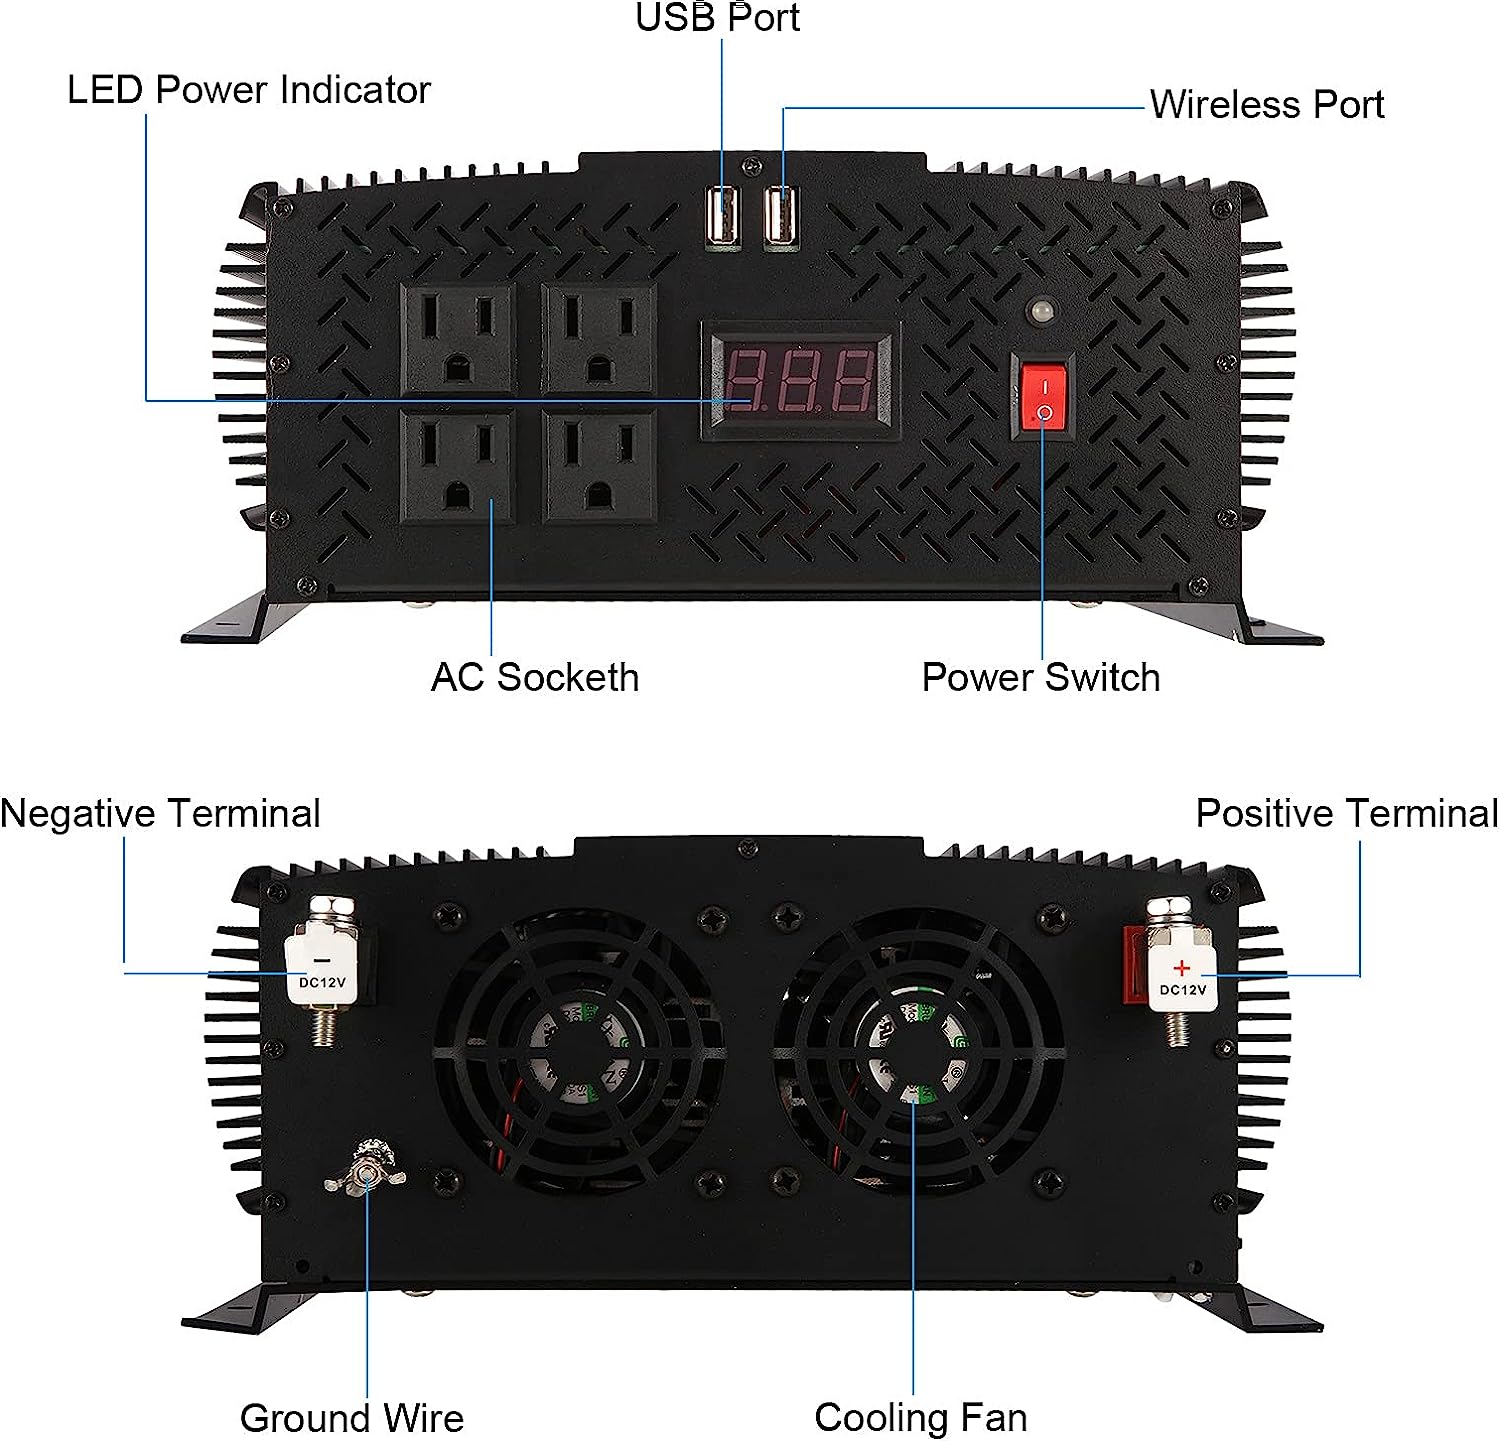 Inverter 1700W, 12V/220V + remote control